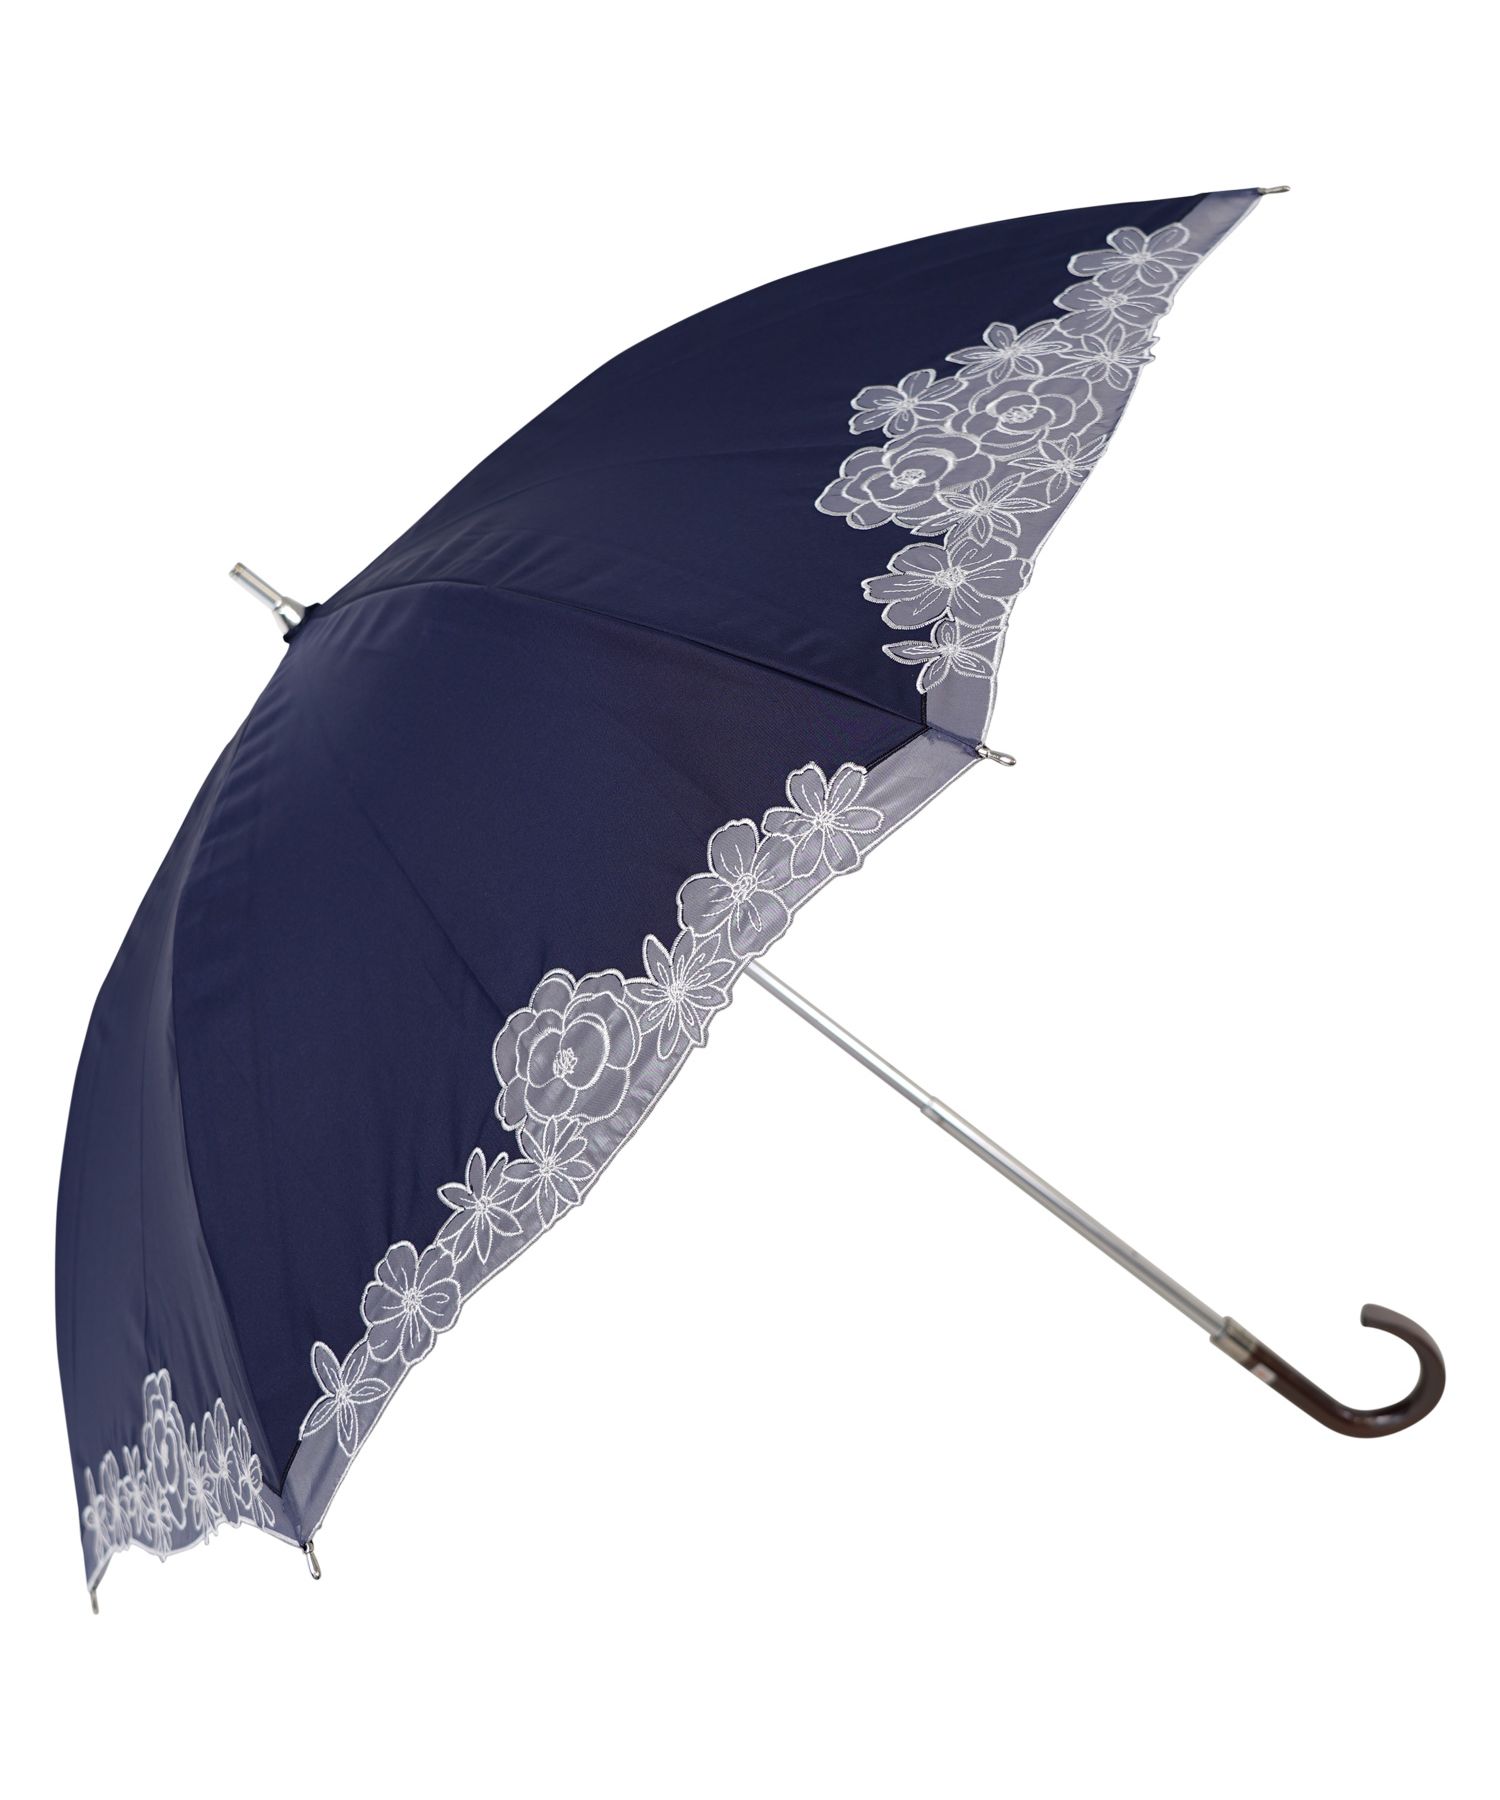 ニナリッチ NINA RICCI 日傘 遮光 晴雨兼用 1段スライドショート 